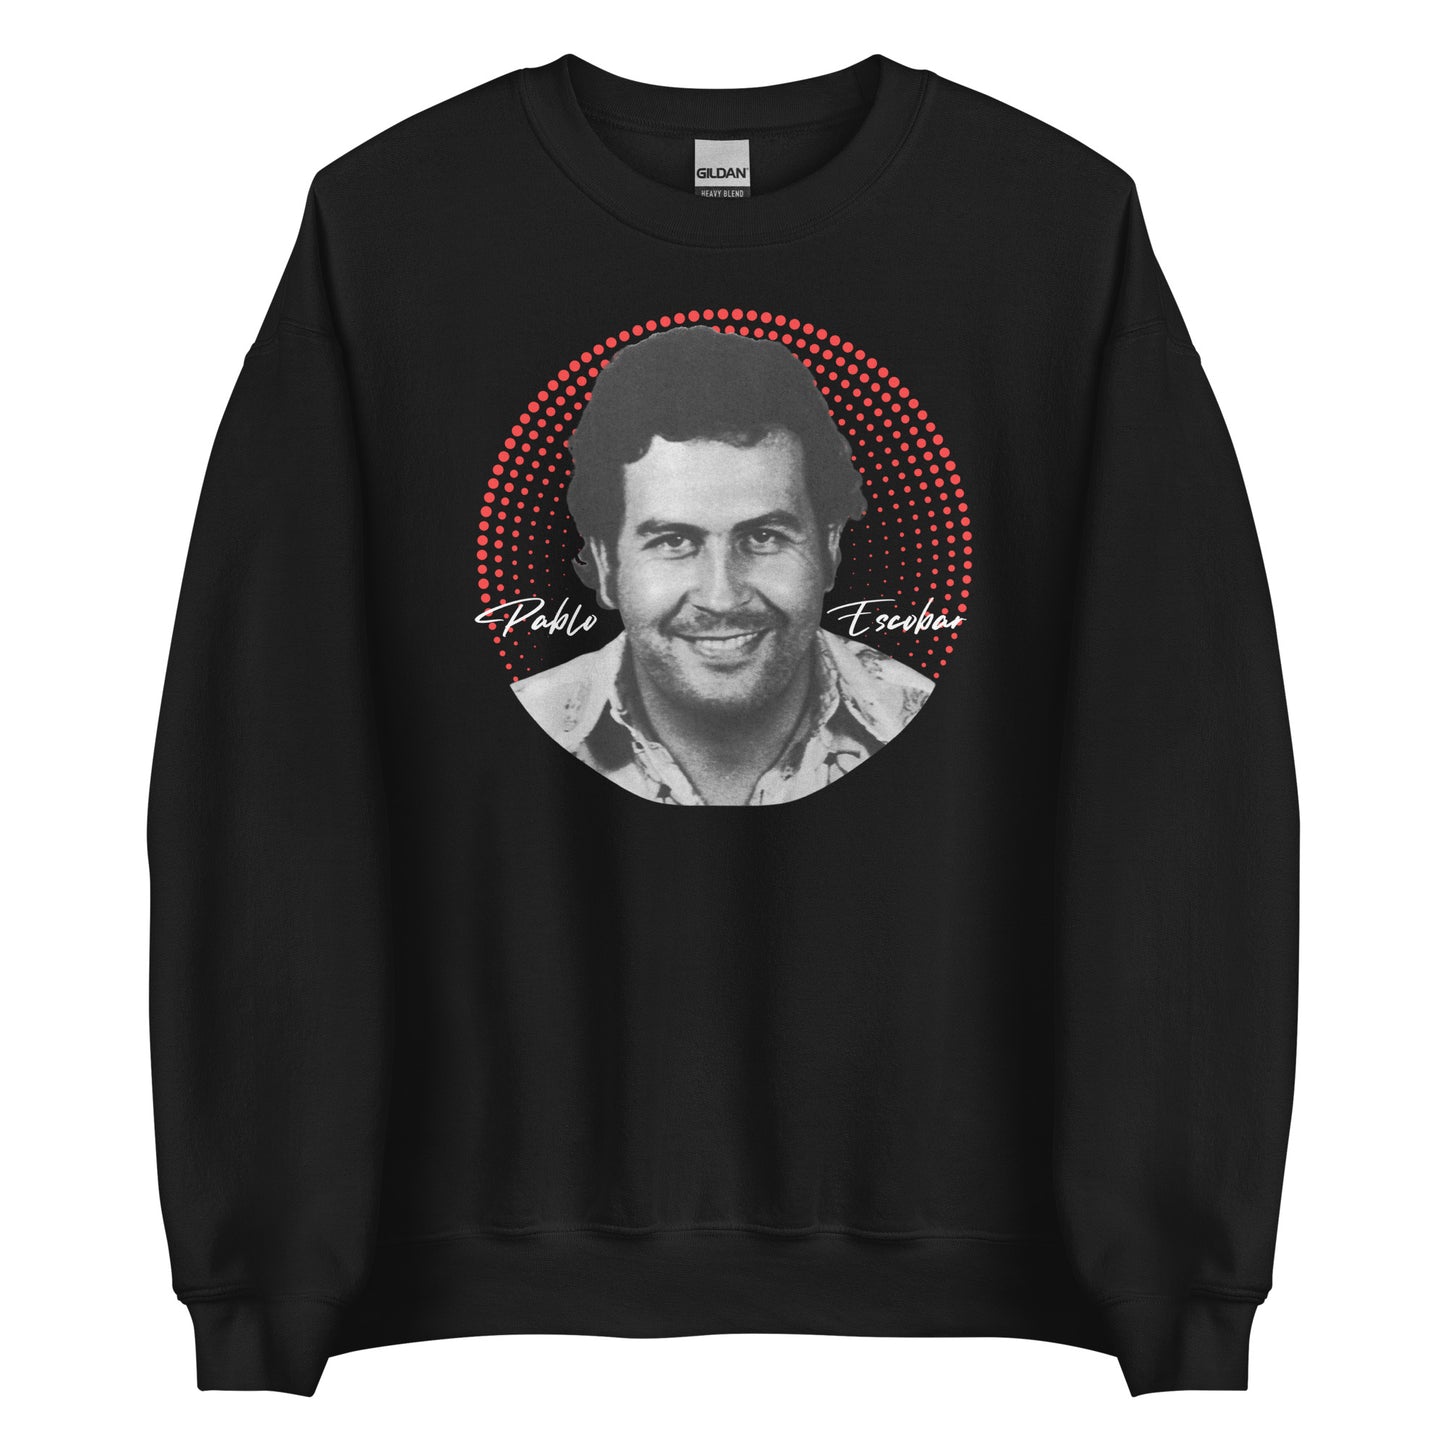 Pablo Escobar, El Patron, Cartel de Medellin Graphic Design Unisex Sweatshirt